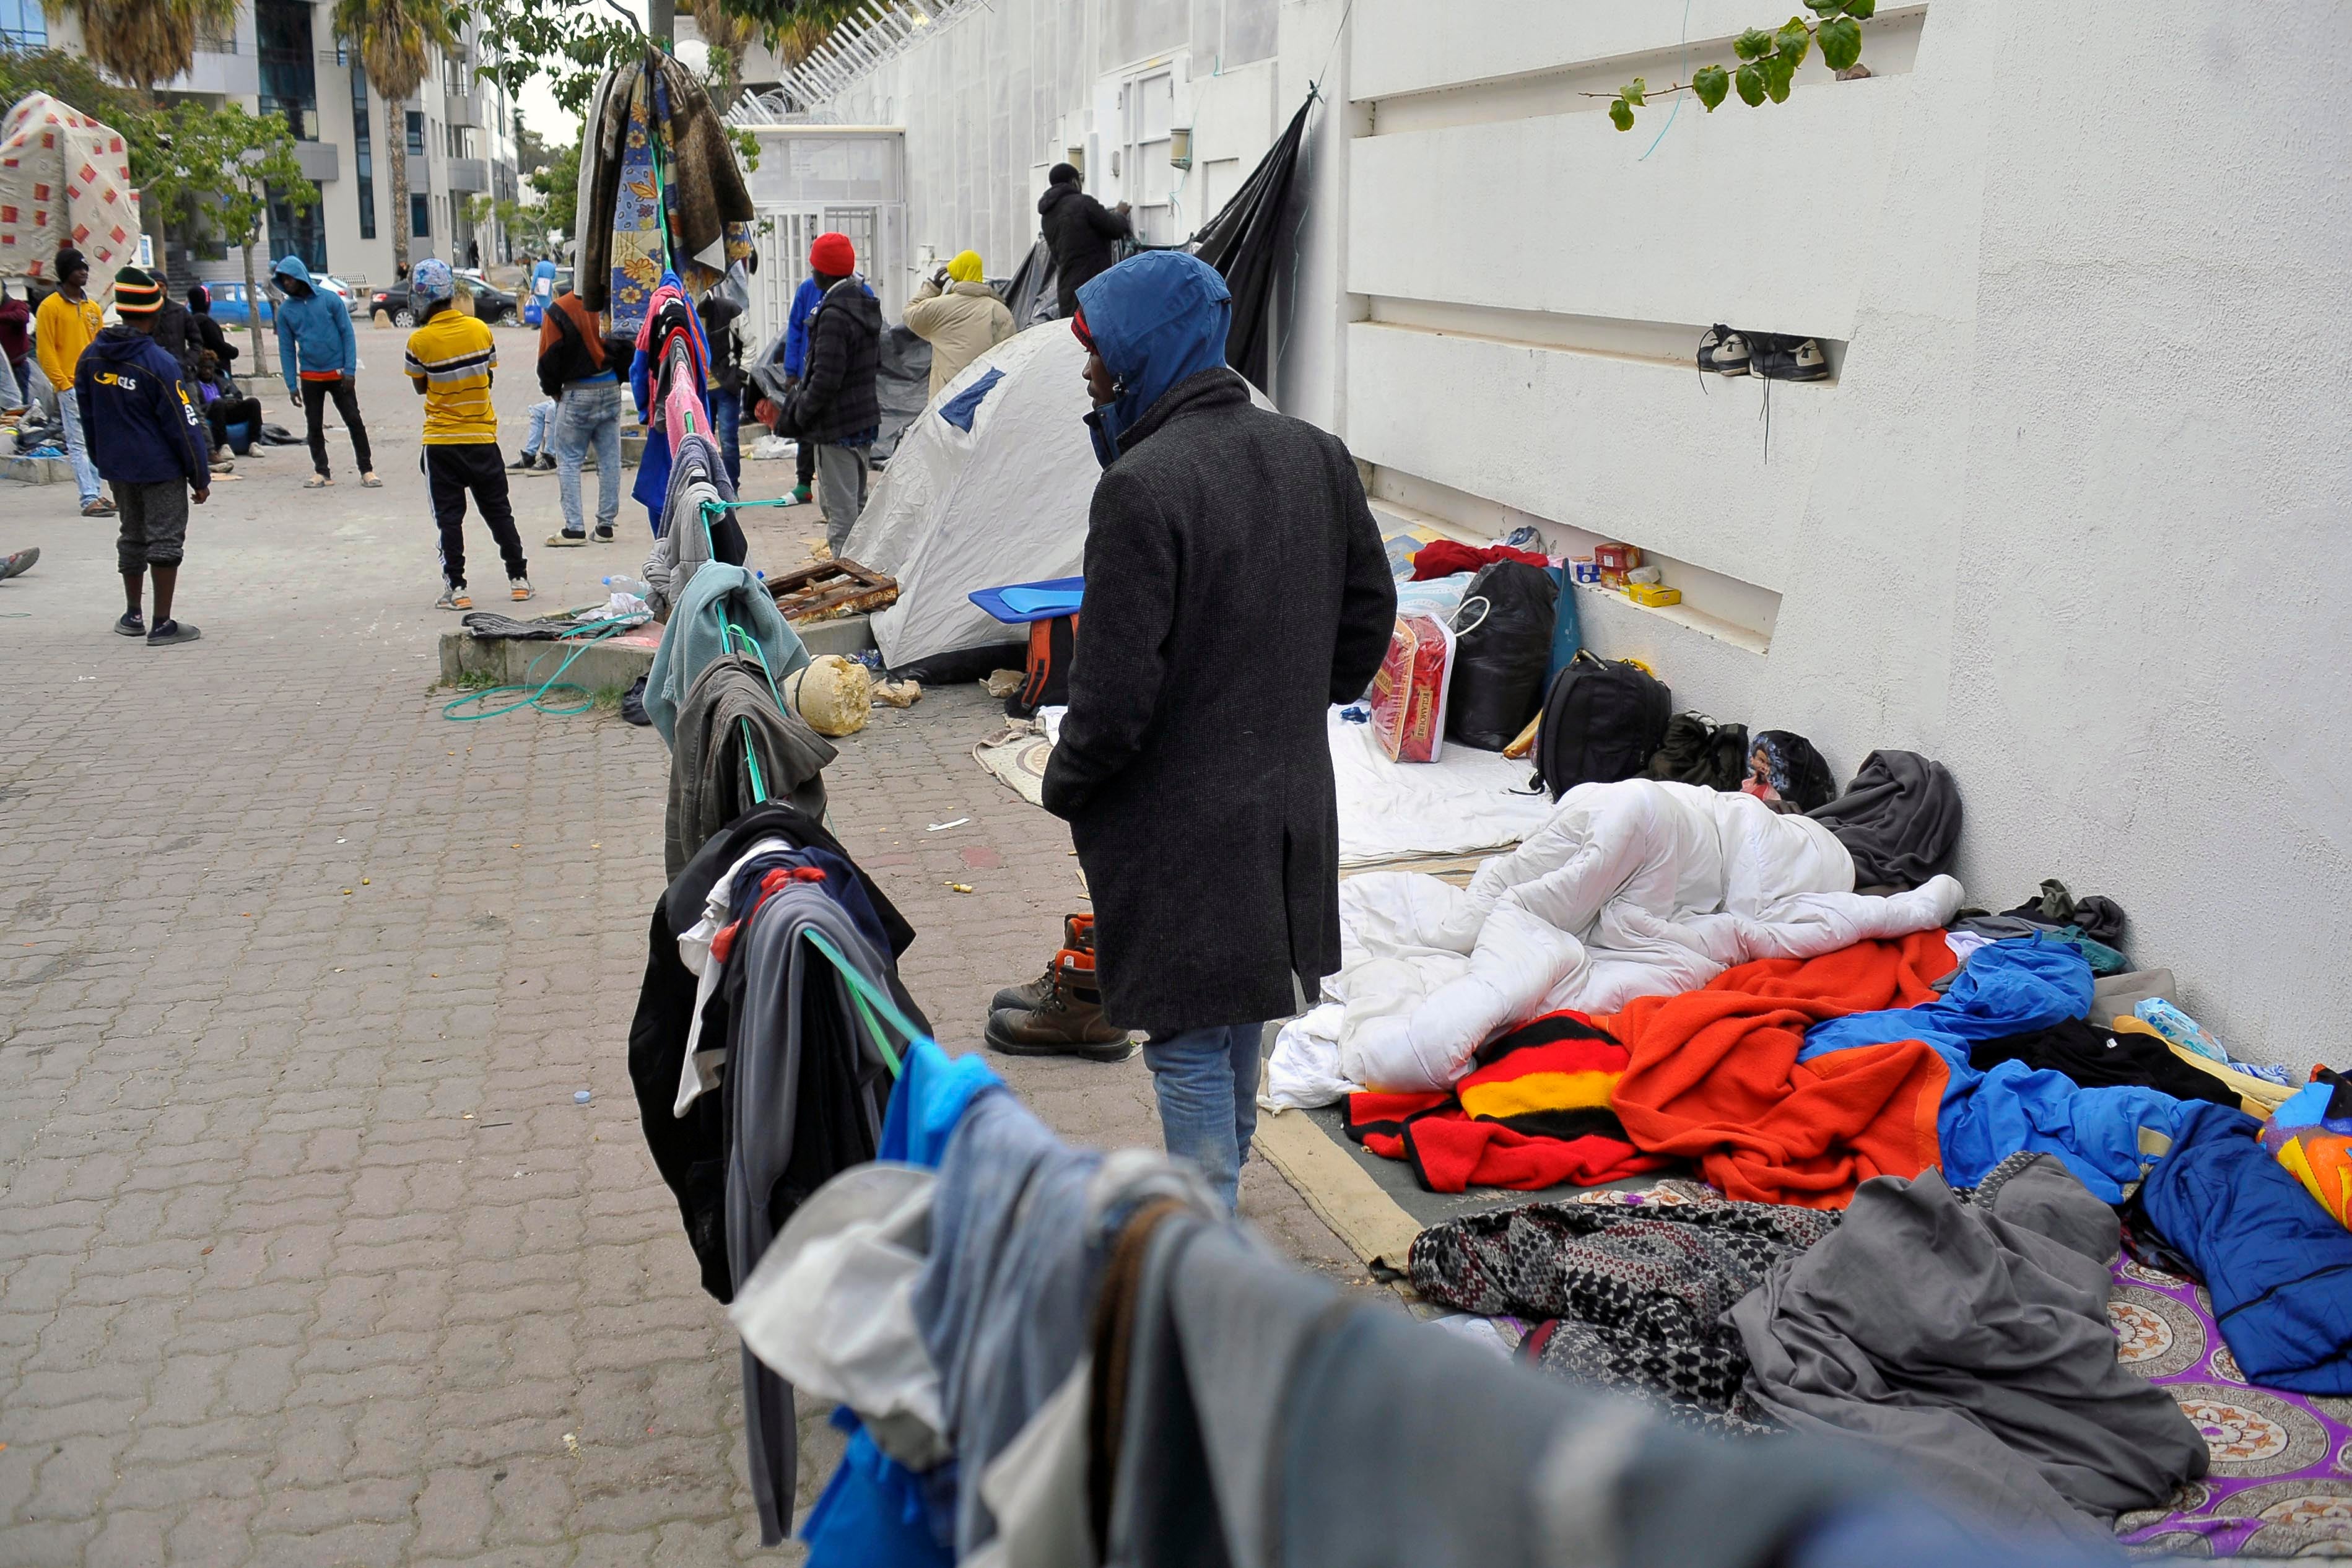 مهاجرون أفارقة سود يخيّمون في تونس العاصمة، تونس، لإيجاد الملجأ والحماية وسط الاعتداءات عليهم، 2 مارس/آذار 2023.